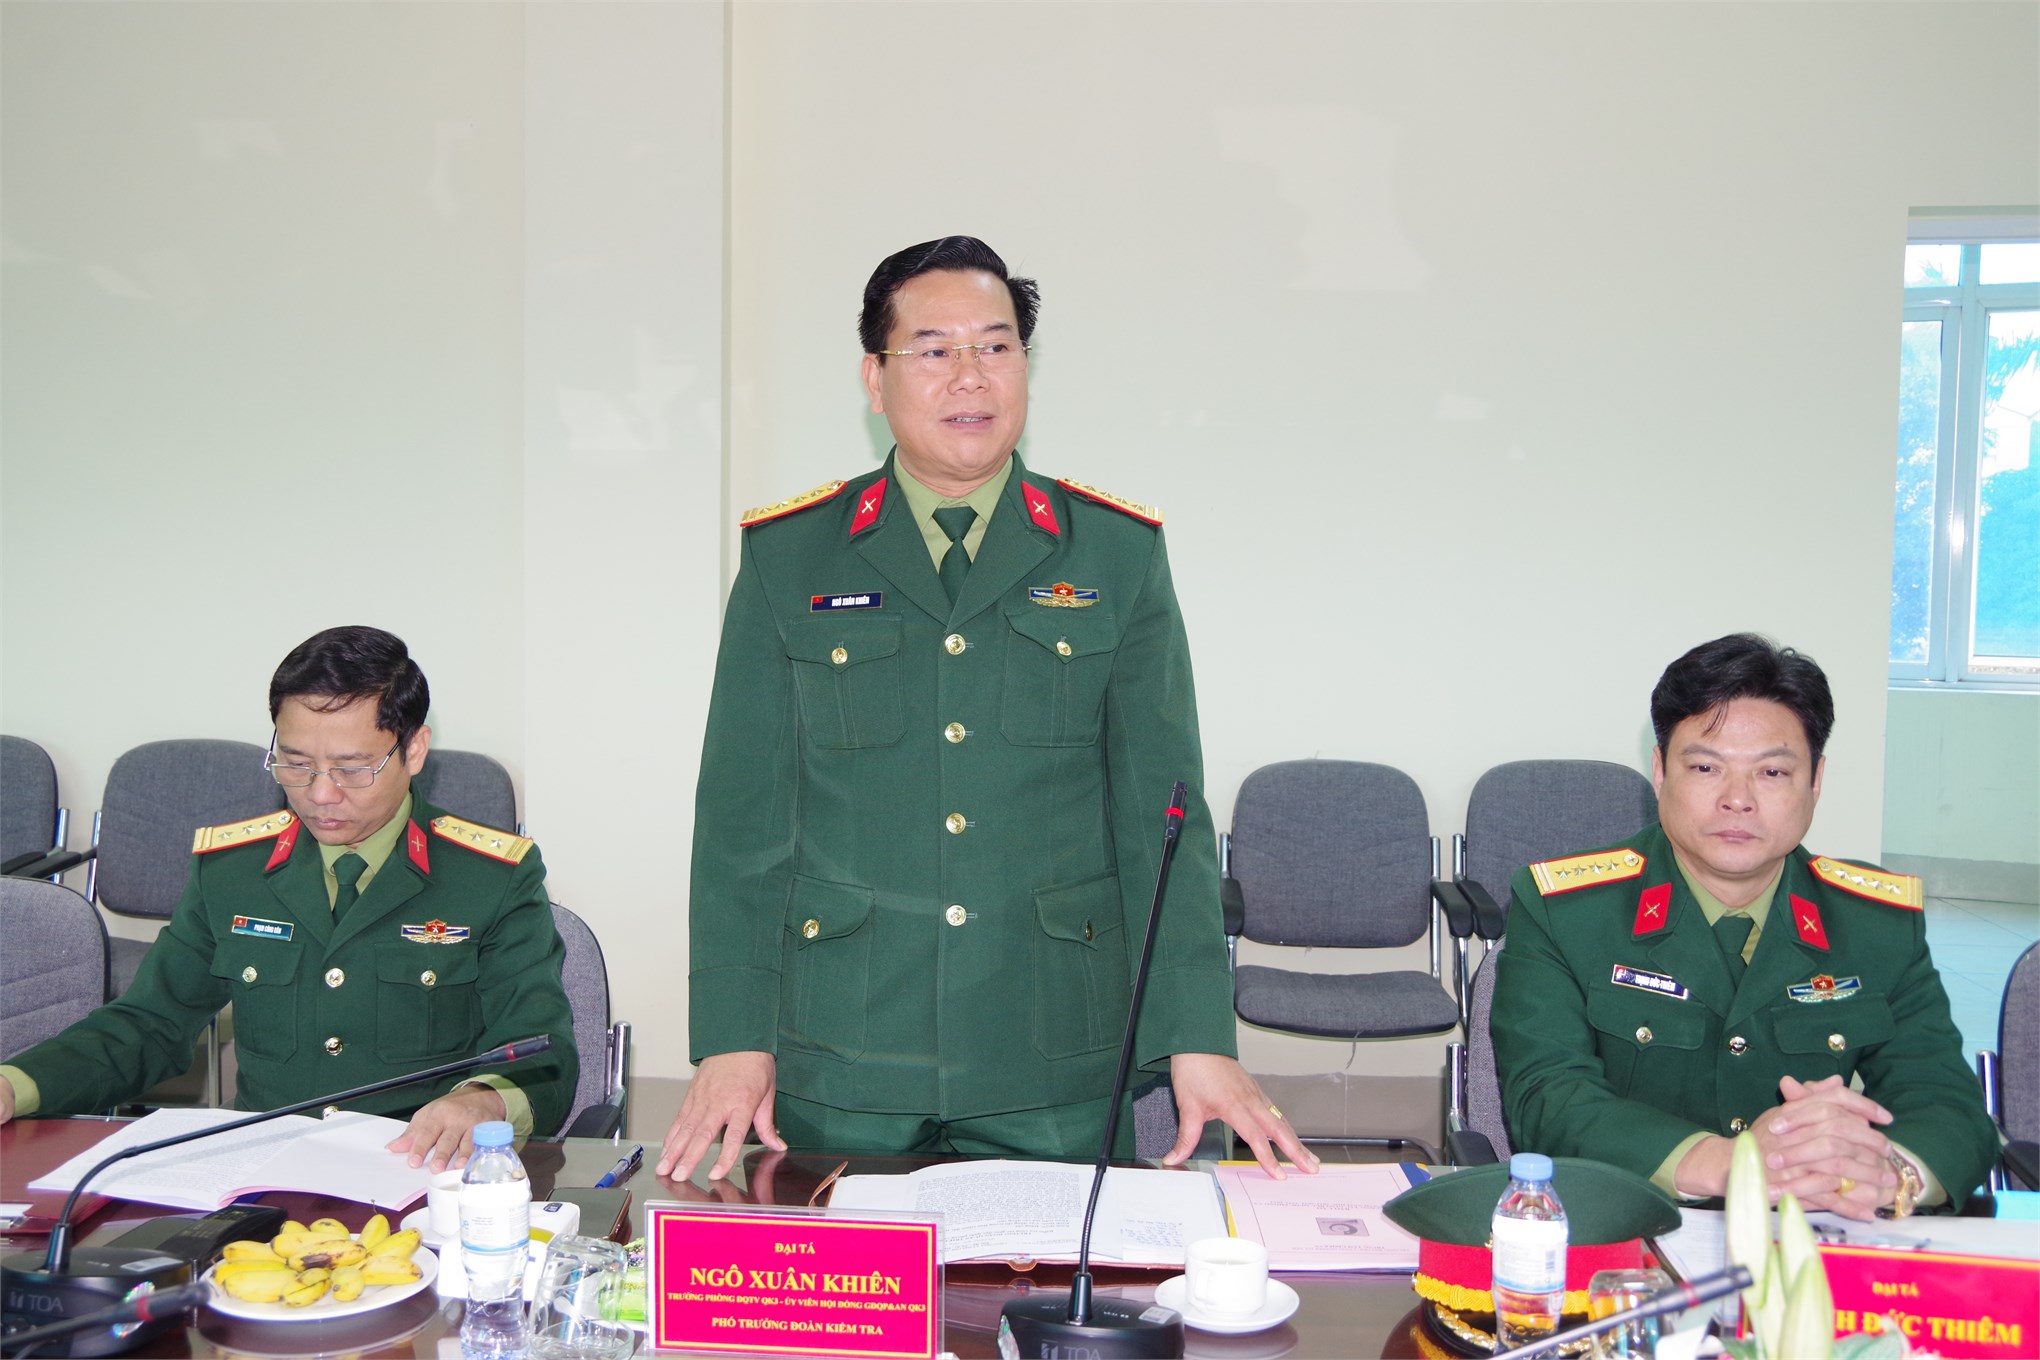 Đoàn công tác Quân khu 3 kiểm tra công tác giáo dục quốc phòng an tại Trung tâm GDQP&AN, Trường Đại học Công nghiệp Hà Nội